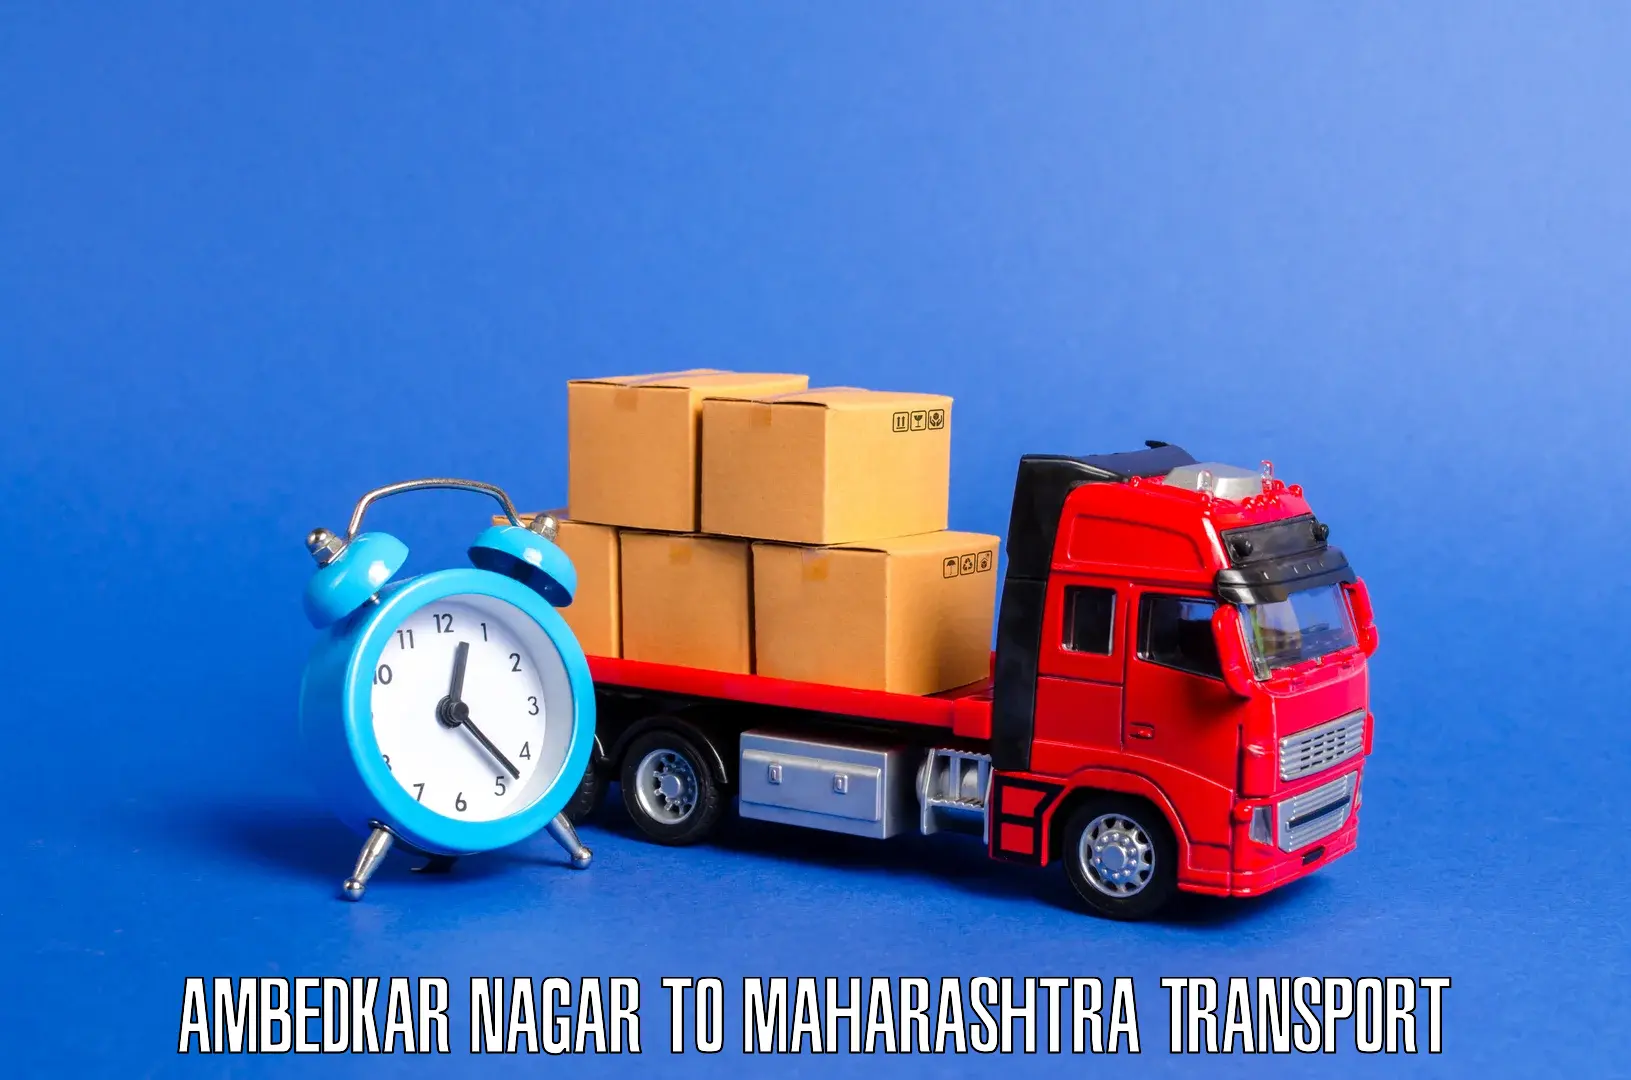 Online transport service Ambedkar Nagar to Loni Ahmednagar